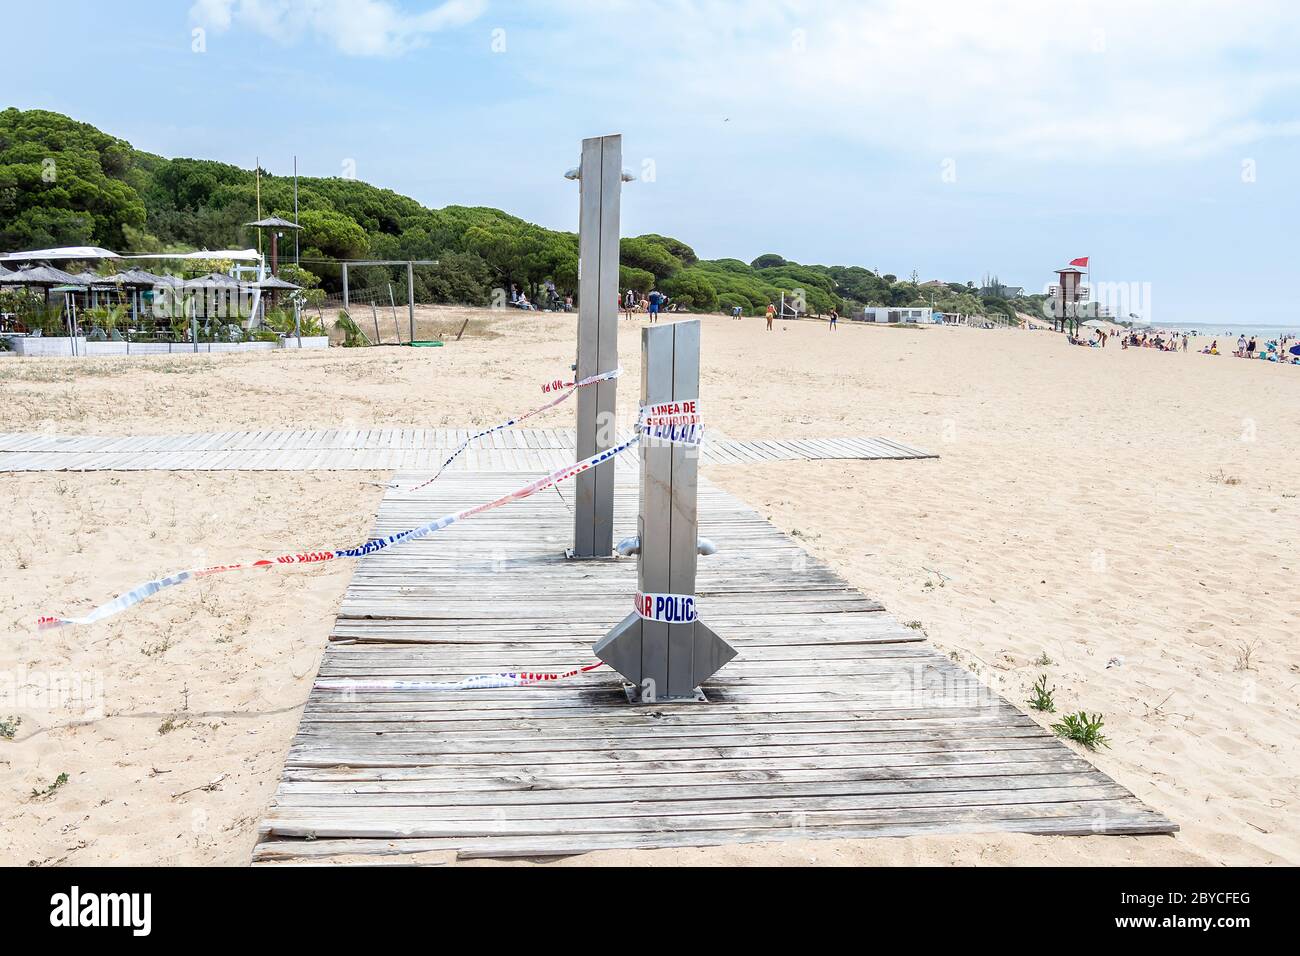 Punta Umbria, Huelva, Spagna - 30 maggio 2020: Le docce pubbliche sulla spiaggia di El Portil sono sigillate dalla polizia locale a causa del coronavirus covid-19 pandemia. Foto Stock